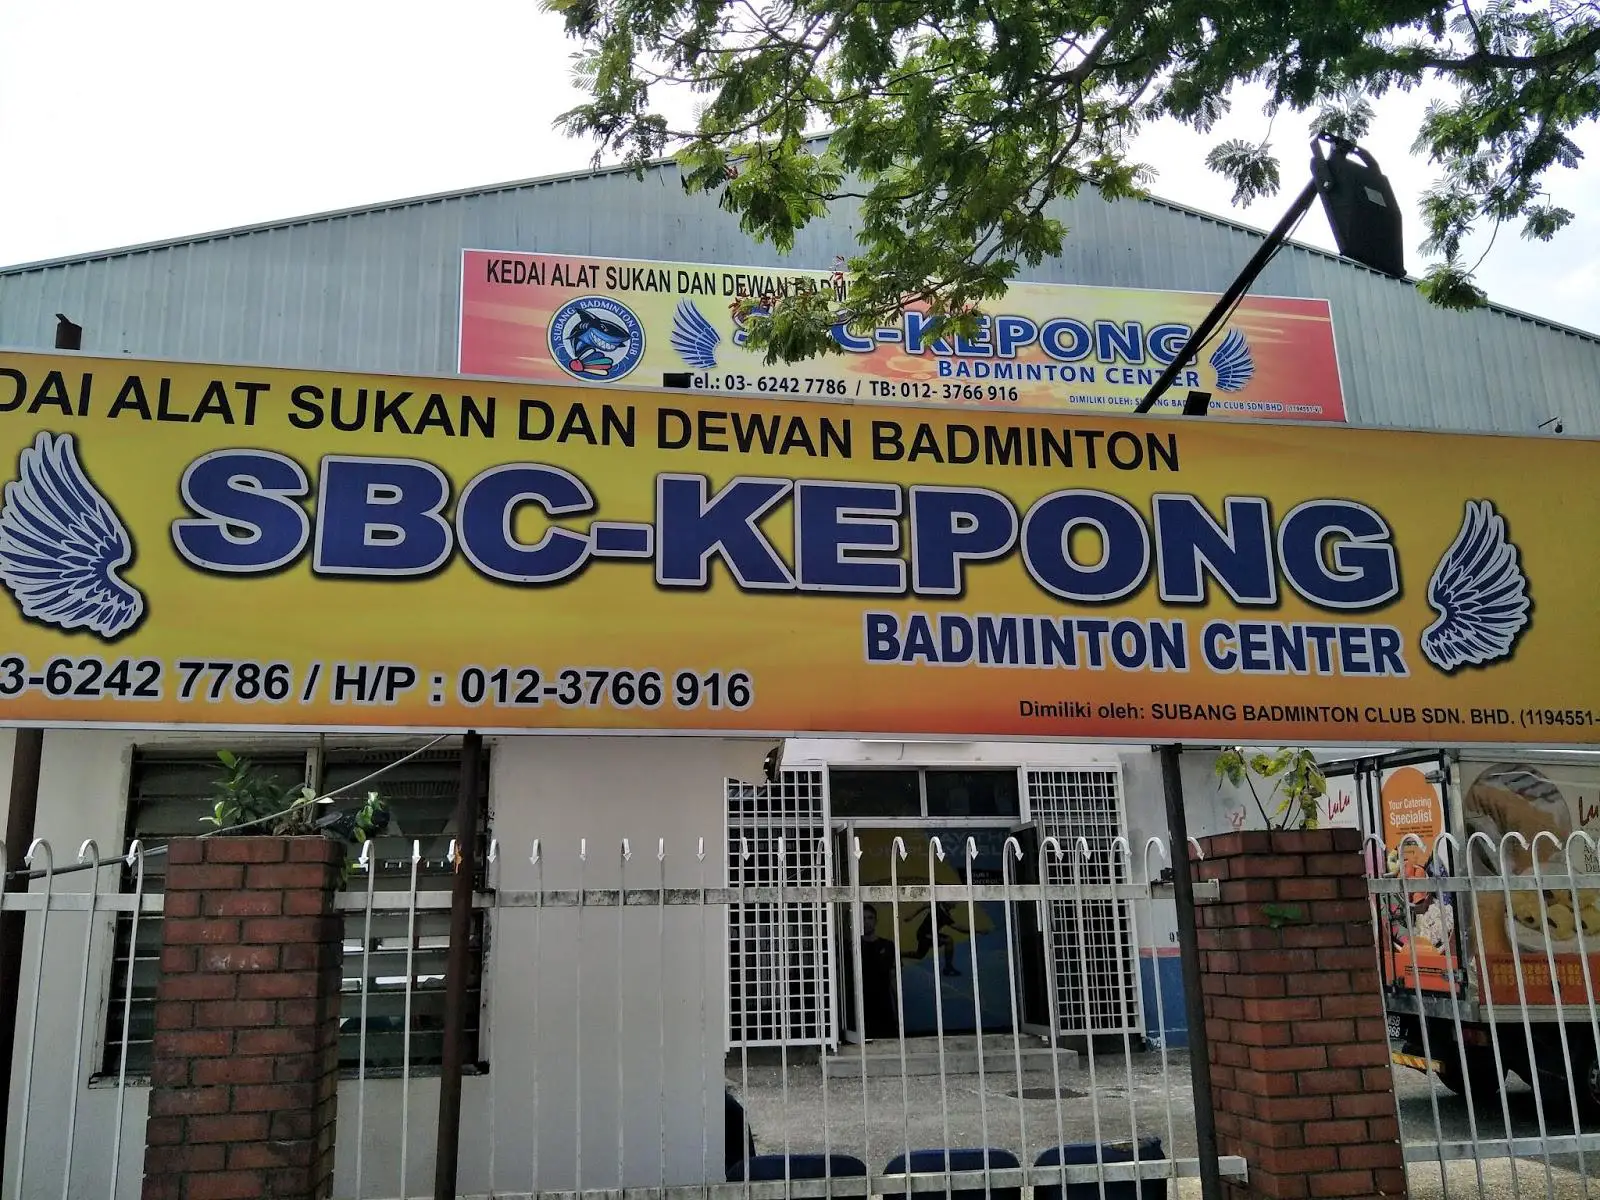 SBC Kepong Badminton Center